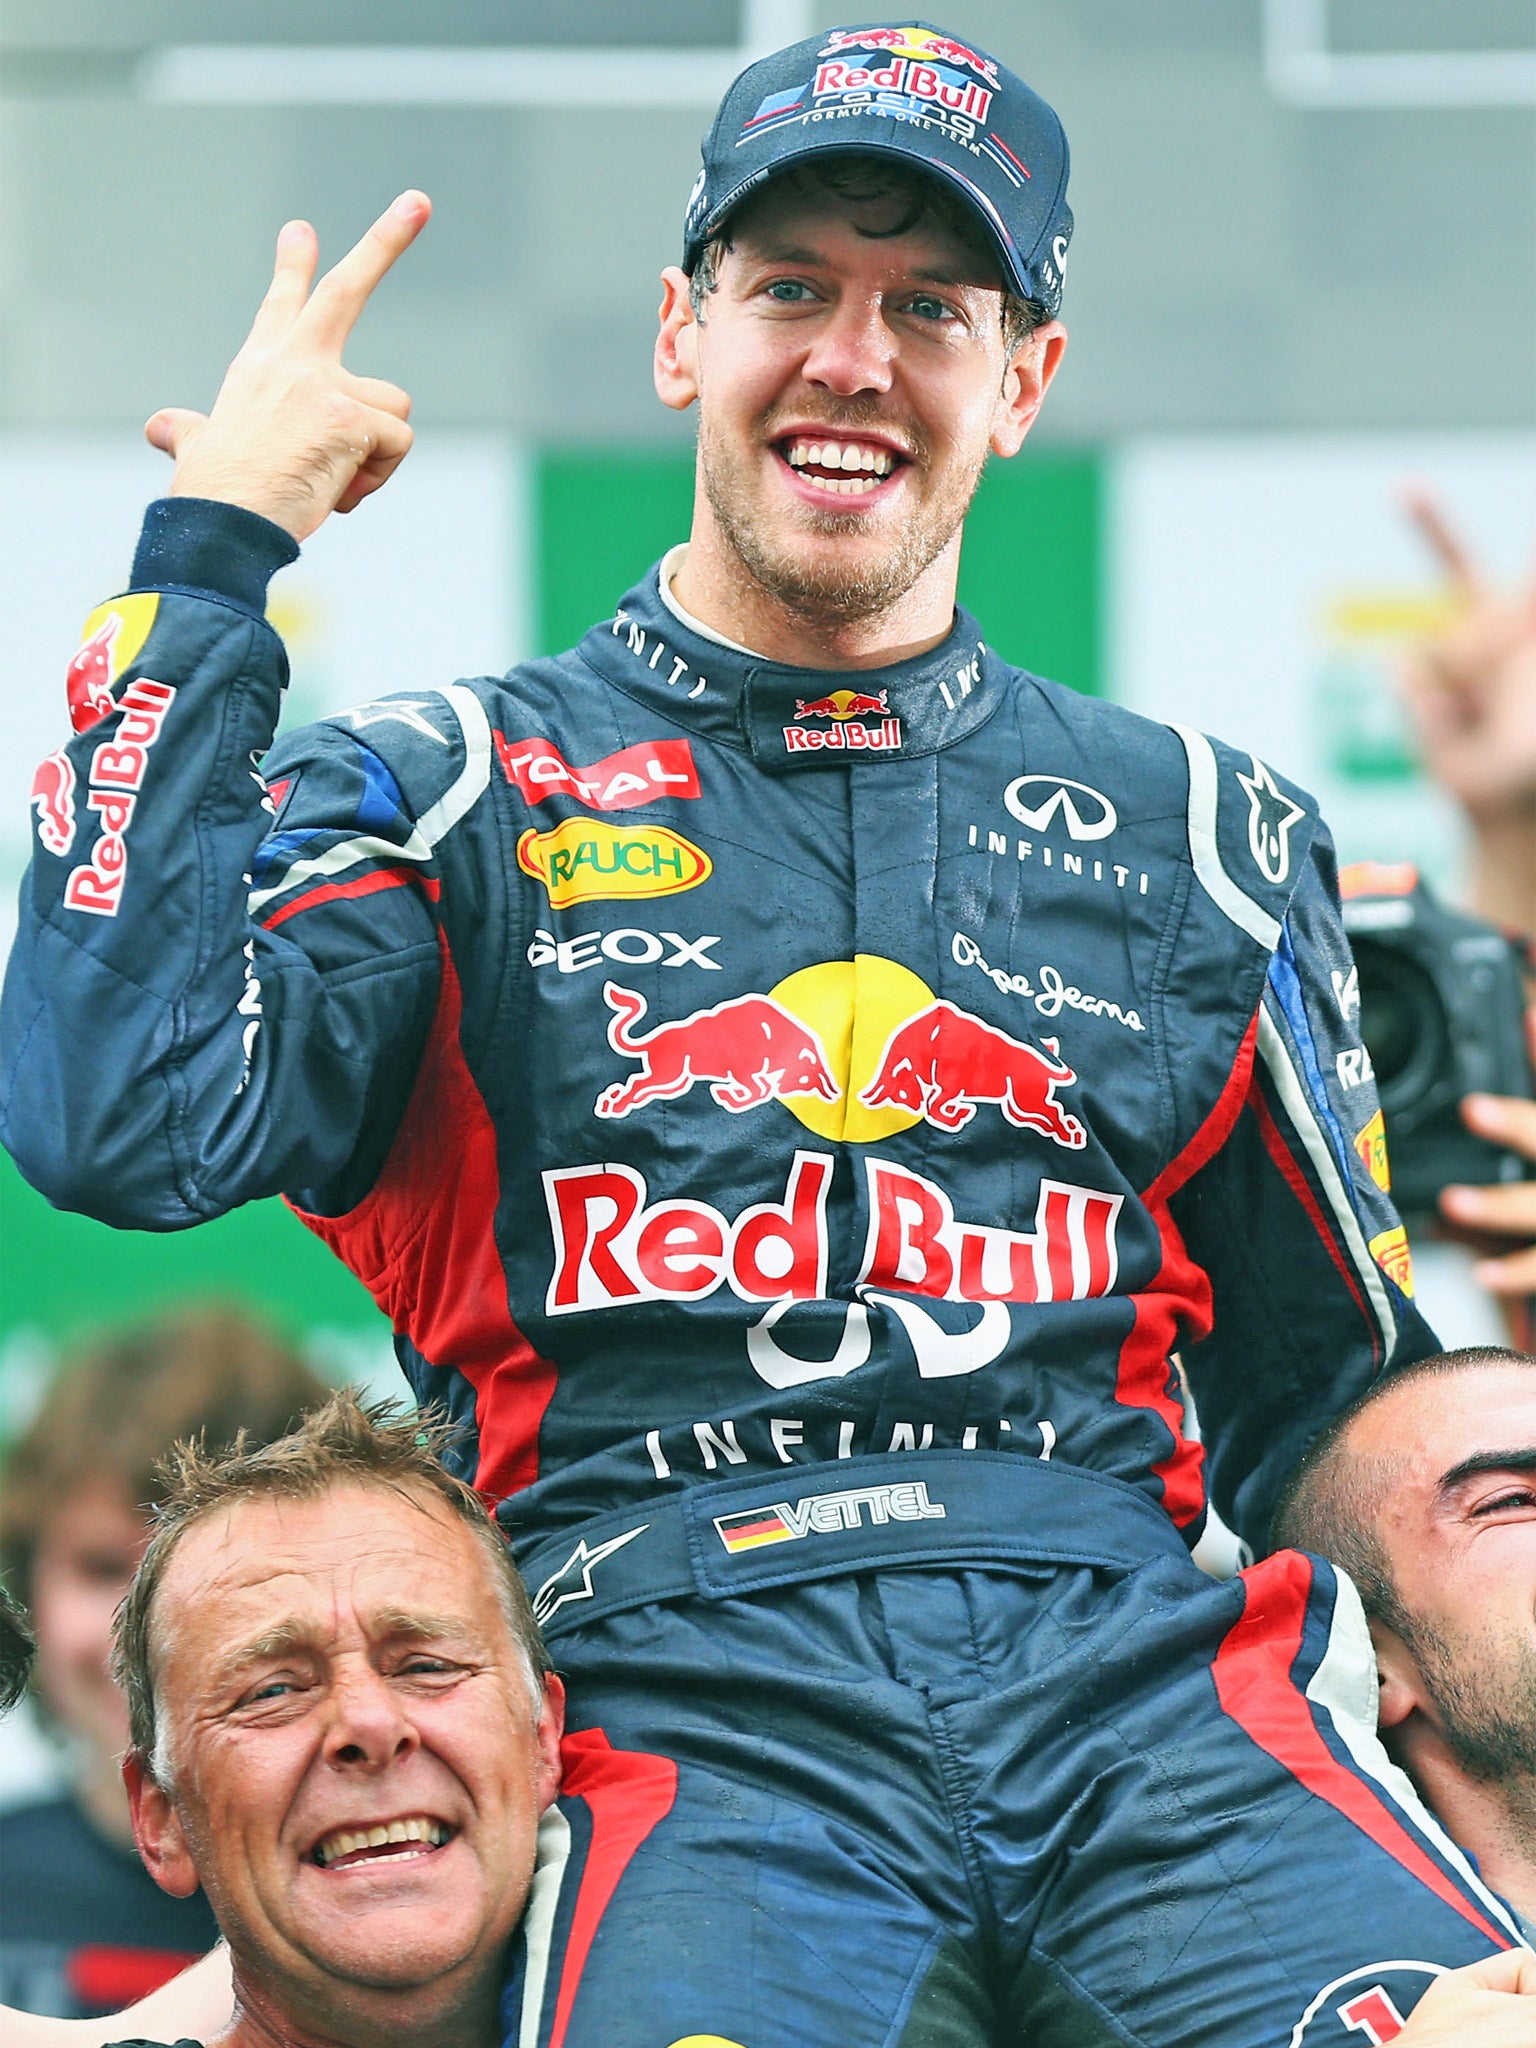 Sebastian Vettel, of Red Bull, again proved Alonso’s nemesis